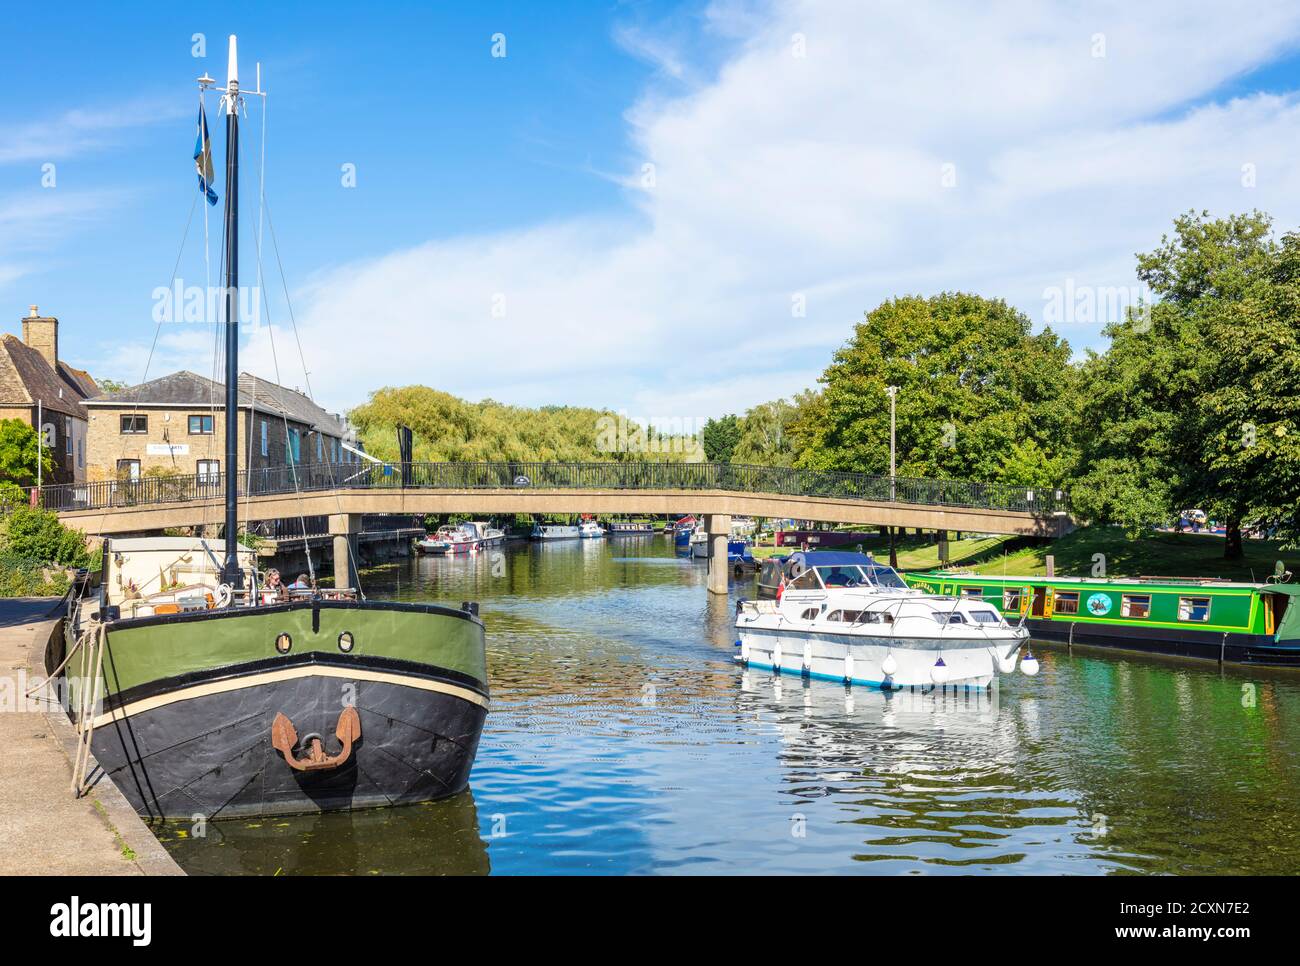 Bateaux sur la rivière Great Ouse et le pont de Babylone Au-dessus de la rivière Great Ouse Ely Cambridgeshire Angleterre GB Europe Banque D'Images